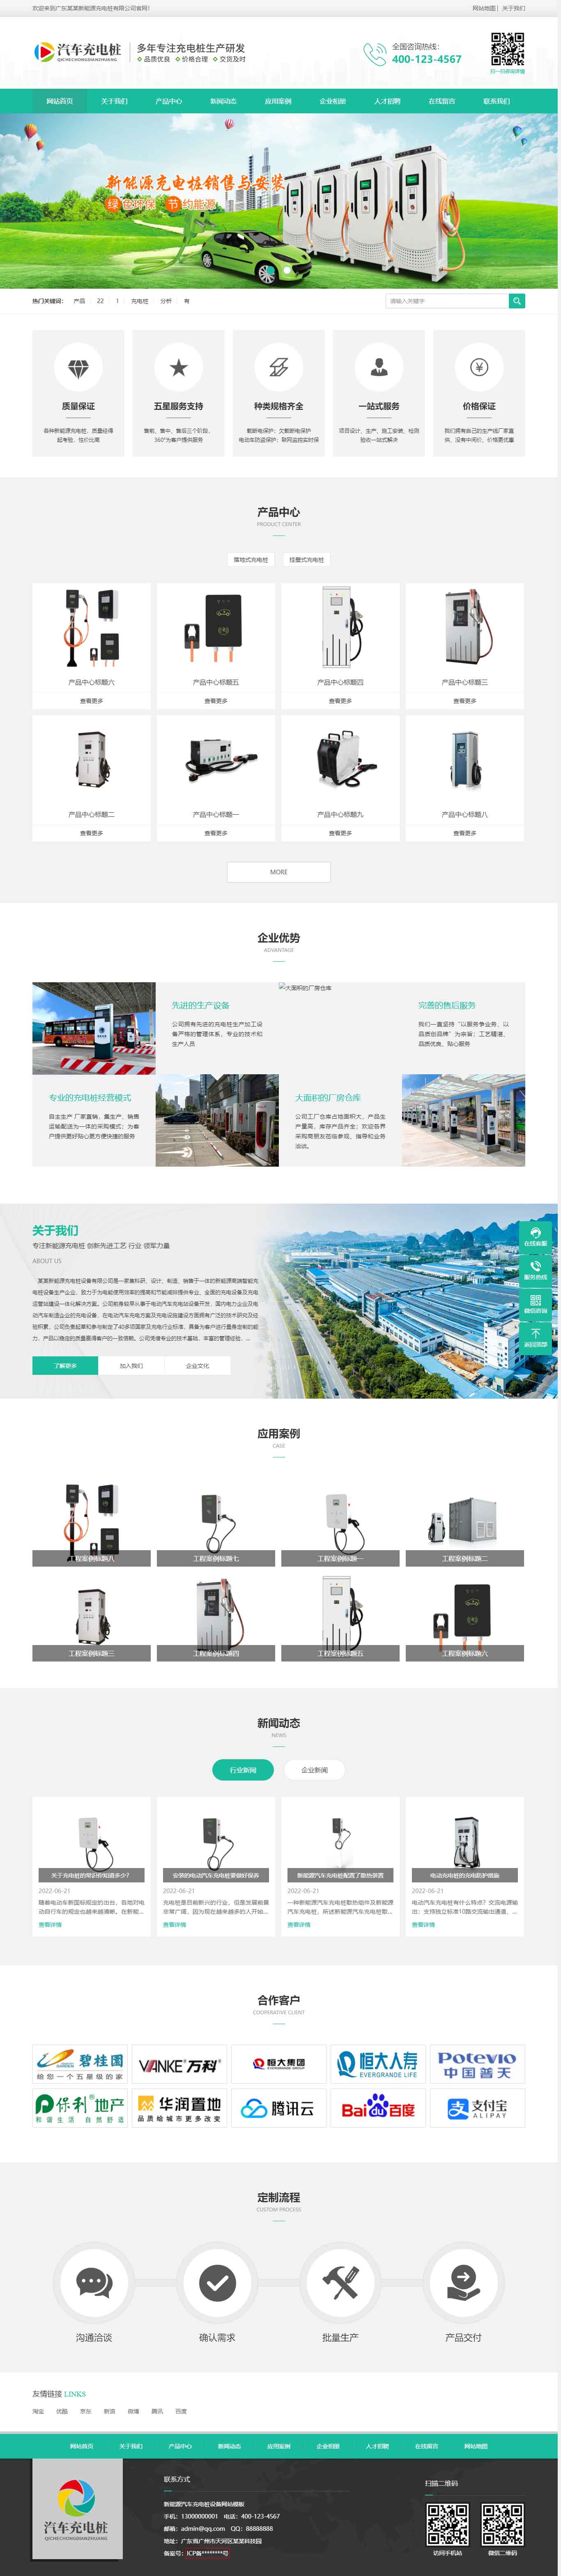 郑州做网站新能源汽车充电桩设备网站建设设计制作(图2)